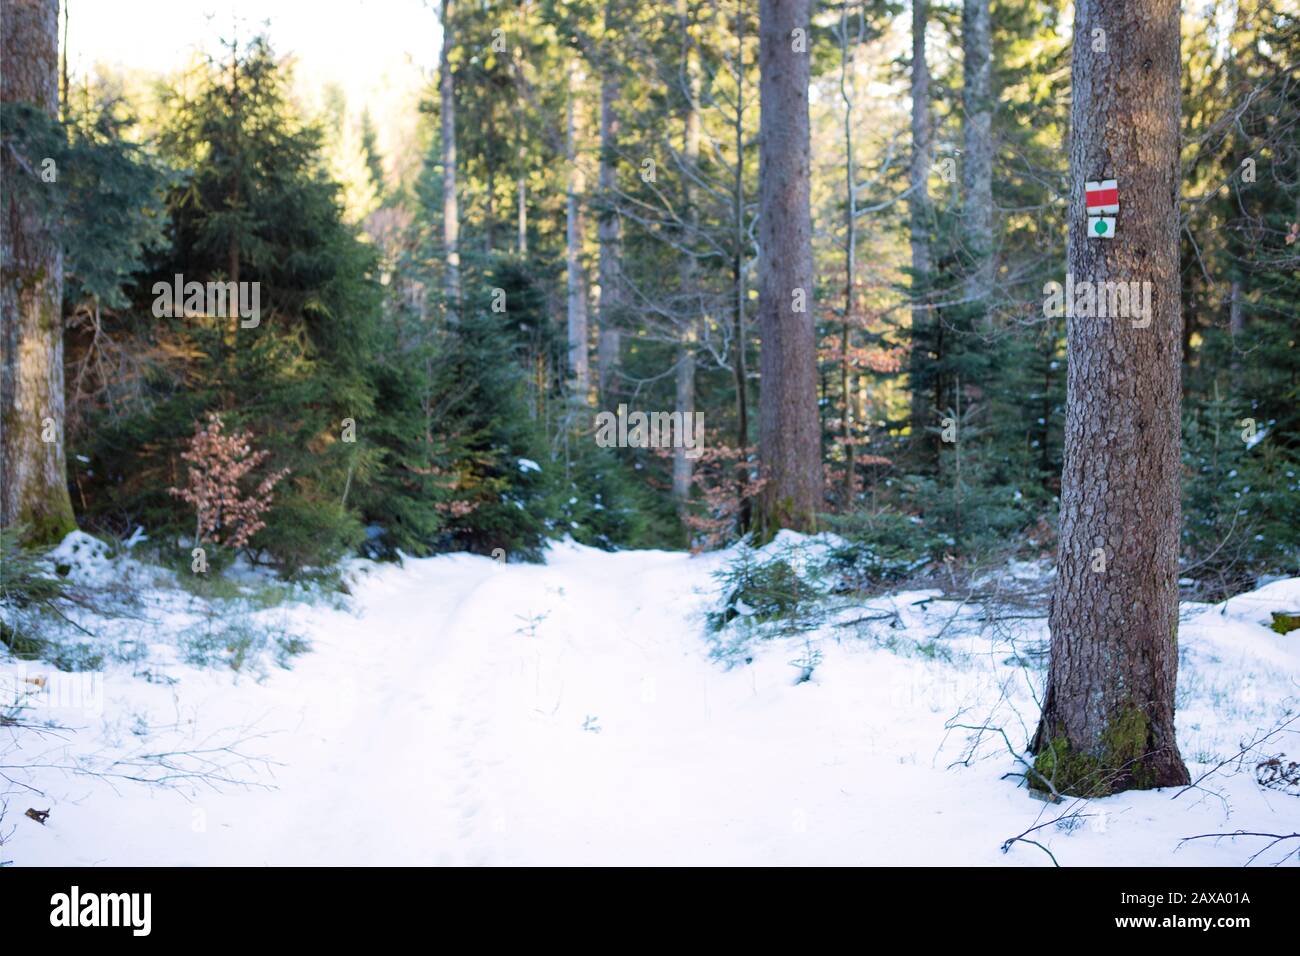 Tronco de árbol con Marca de rastro en bosque nevado. Camino dentro de la madera cubierta de nieve blanca. Árboles de coníferas bajo la luz del sol. Paisaje de bosque negro, mounta Foto de stock